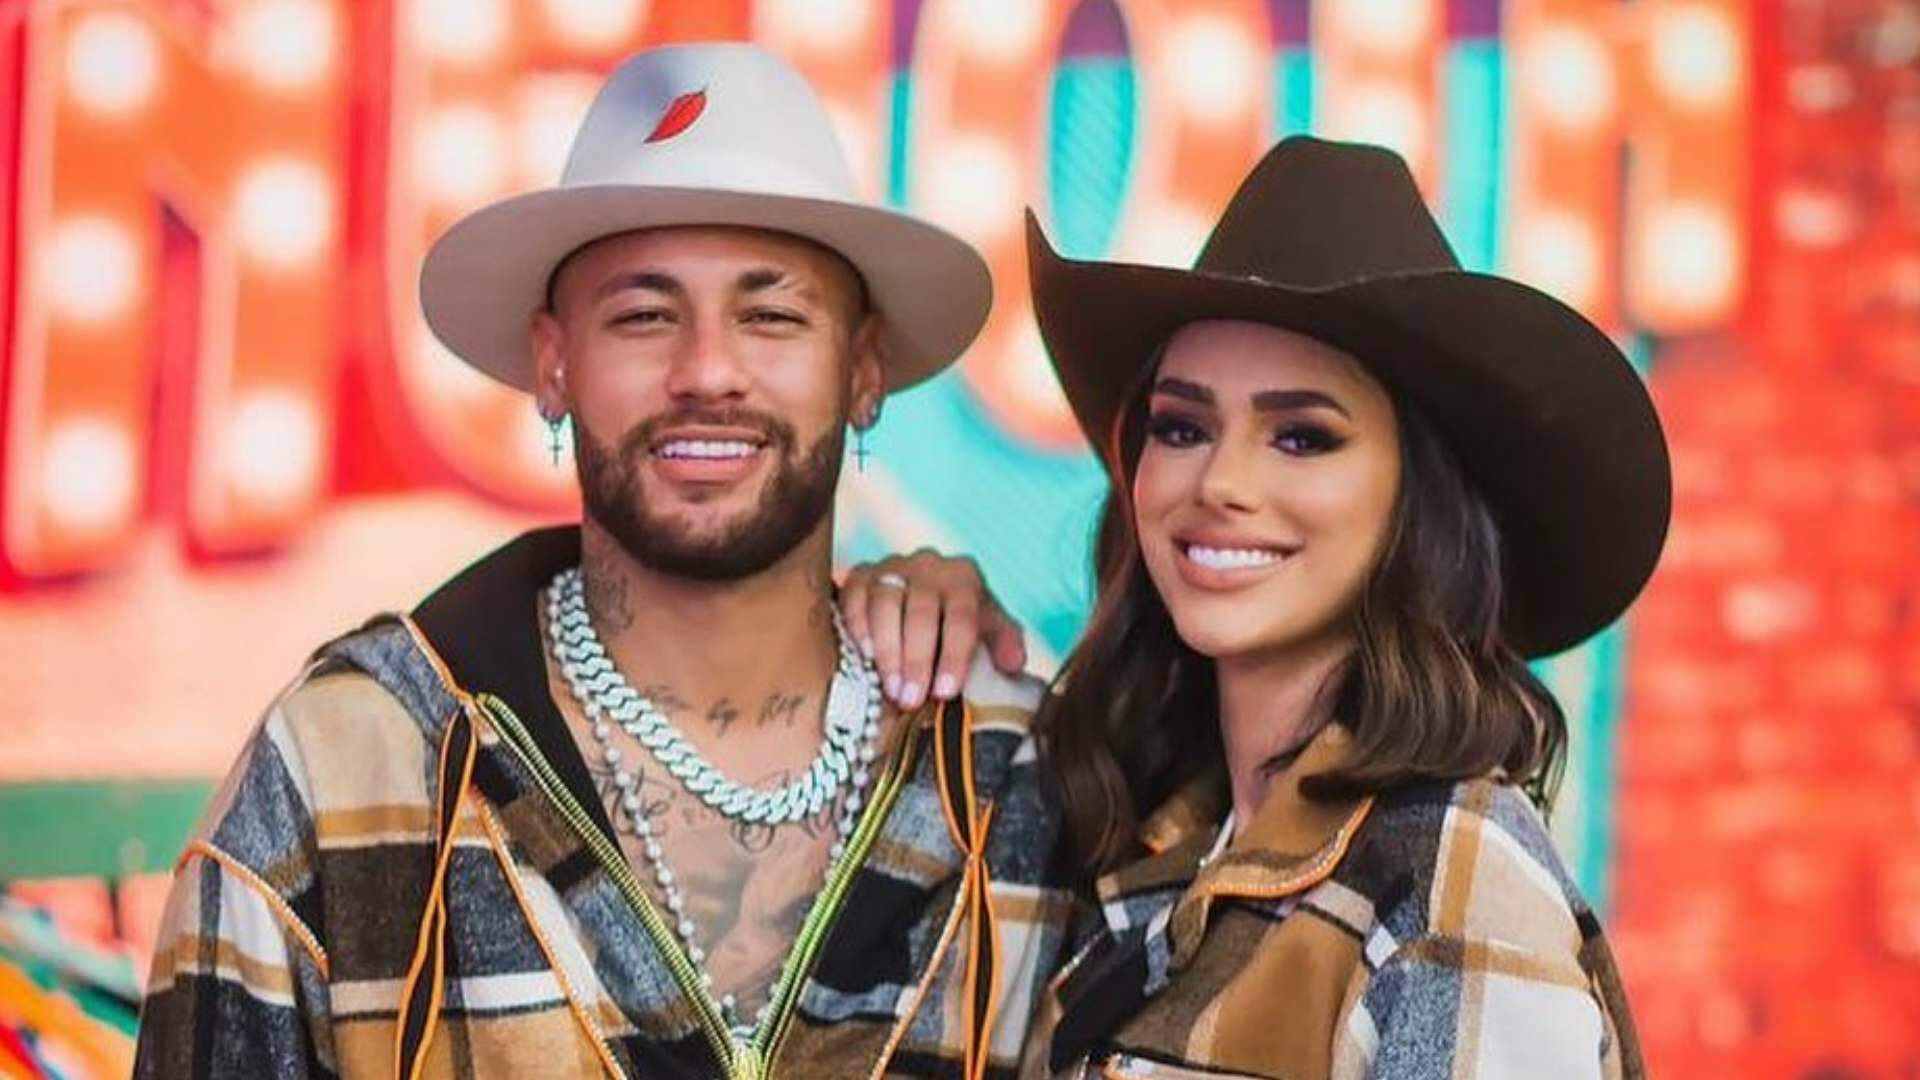 Chegou ao fim! Neymar confirma término de relacionamento com Bruna Biancardi, diz jornalista